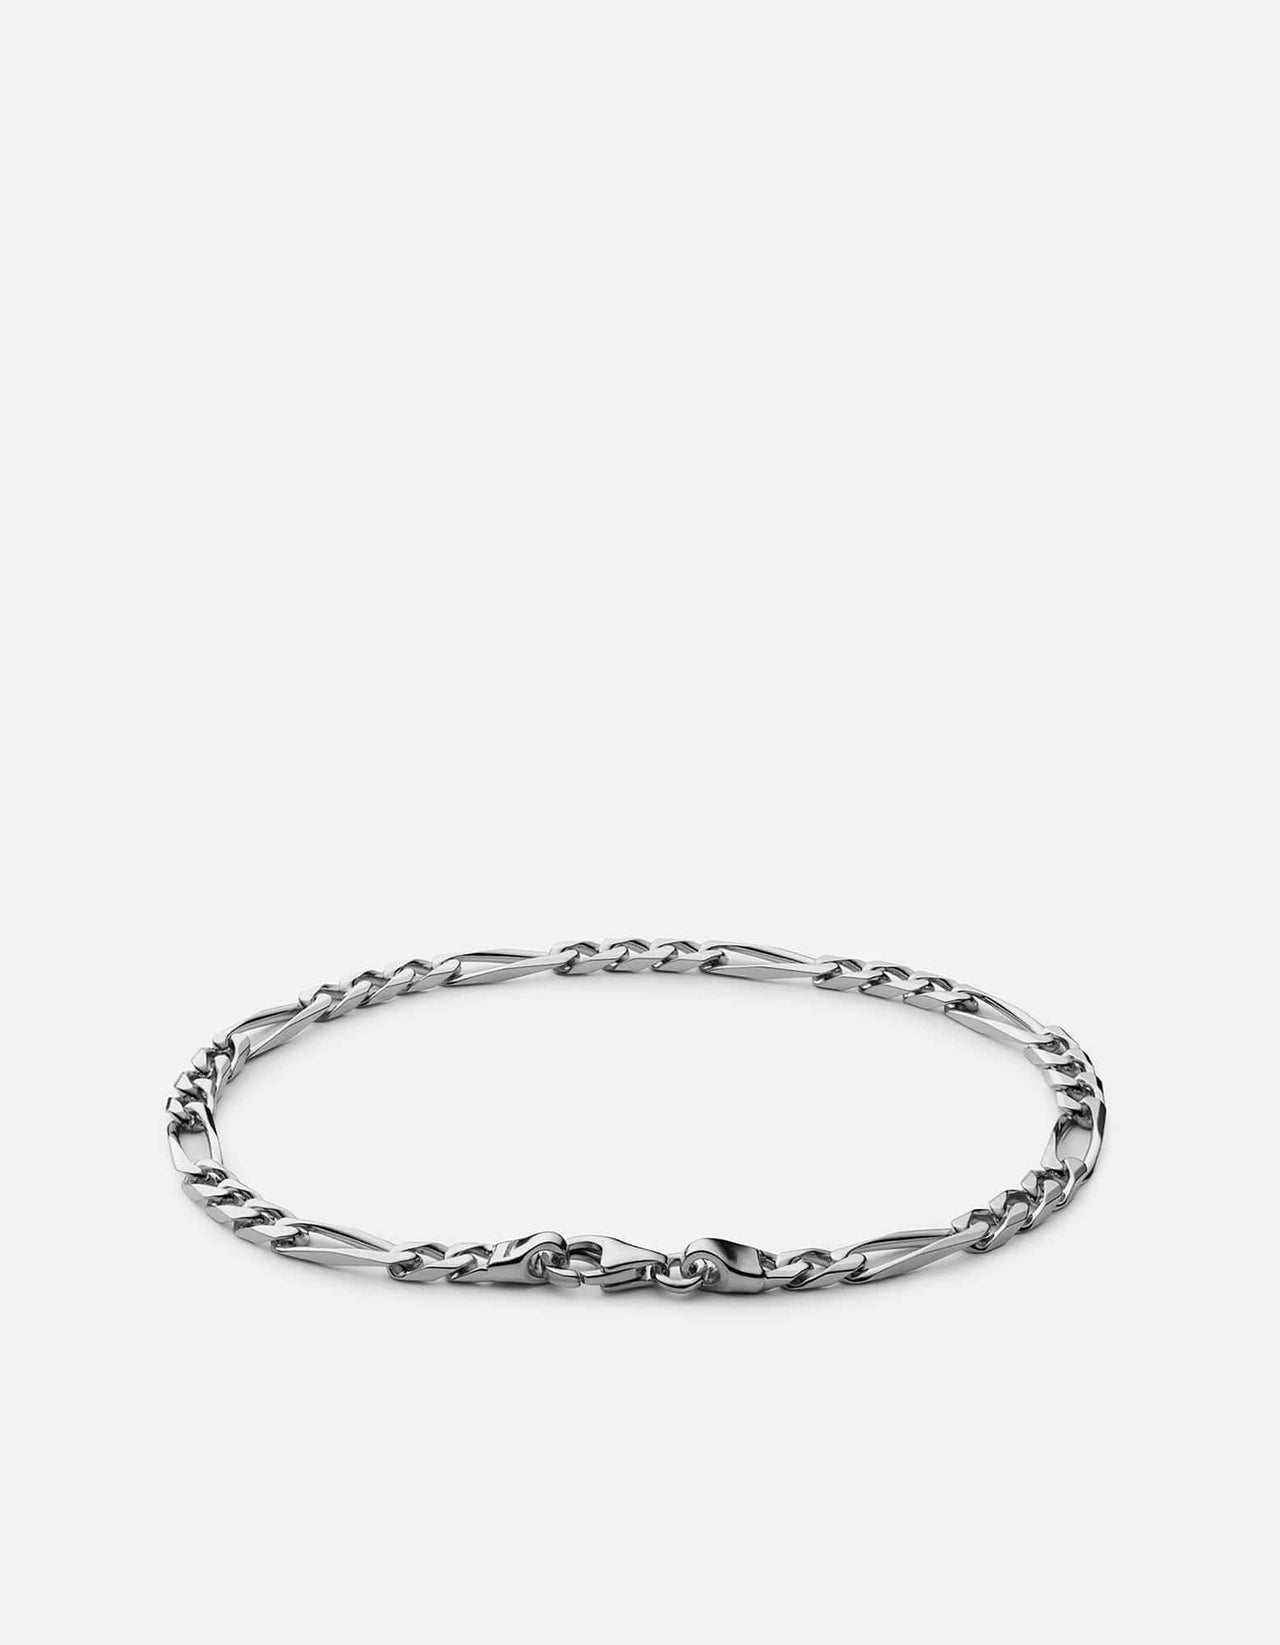 3mm Figaro Chain Bracelet, Sterling Silver | Men's Bracelets | Miansai